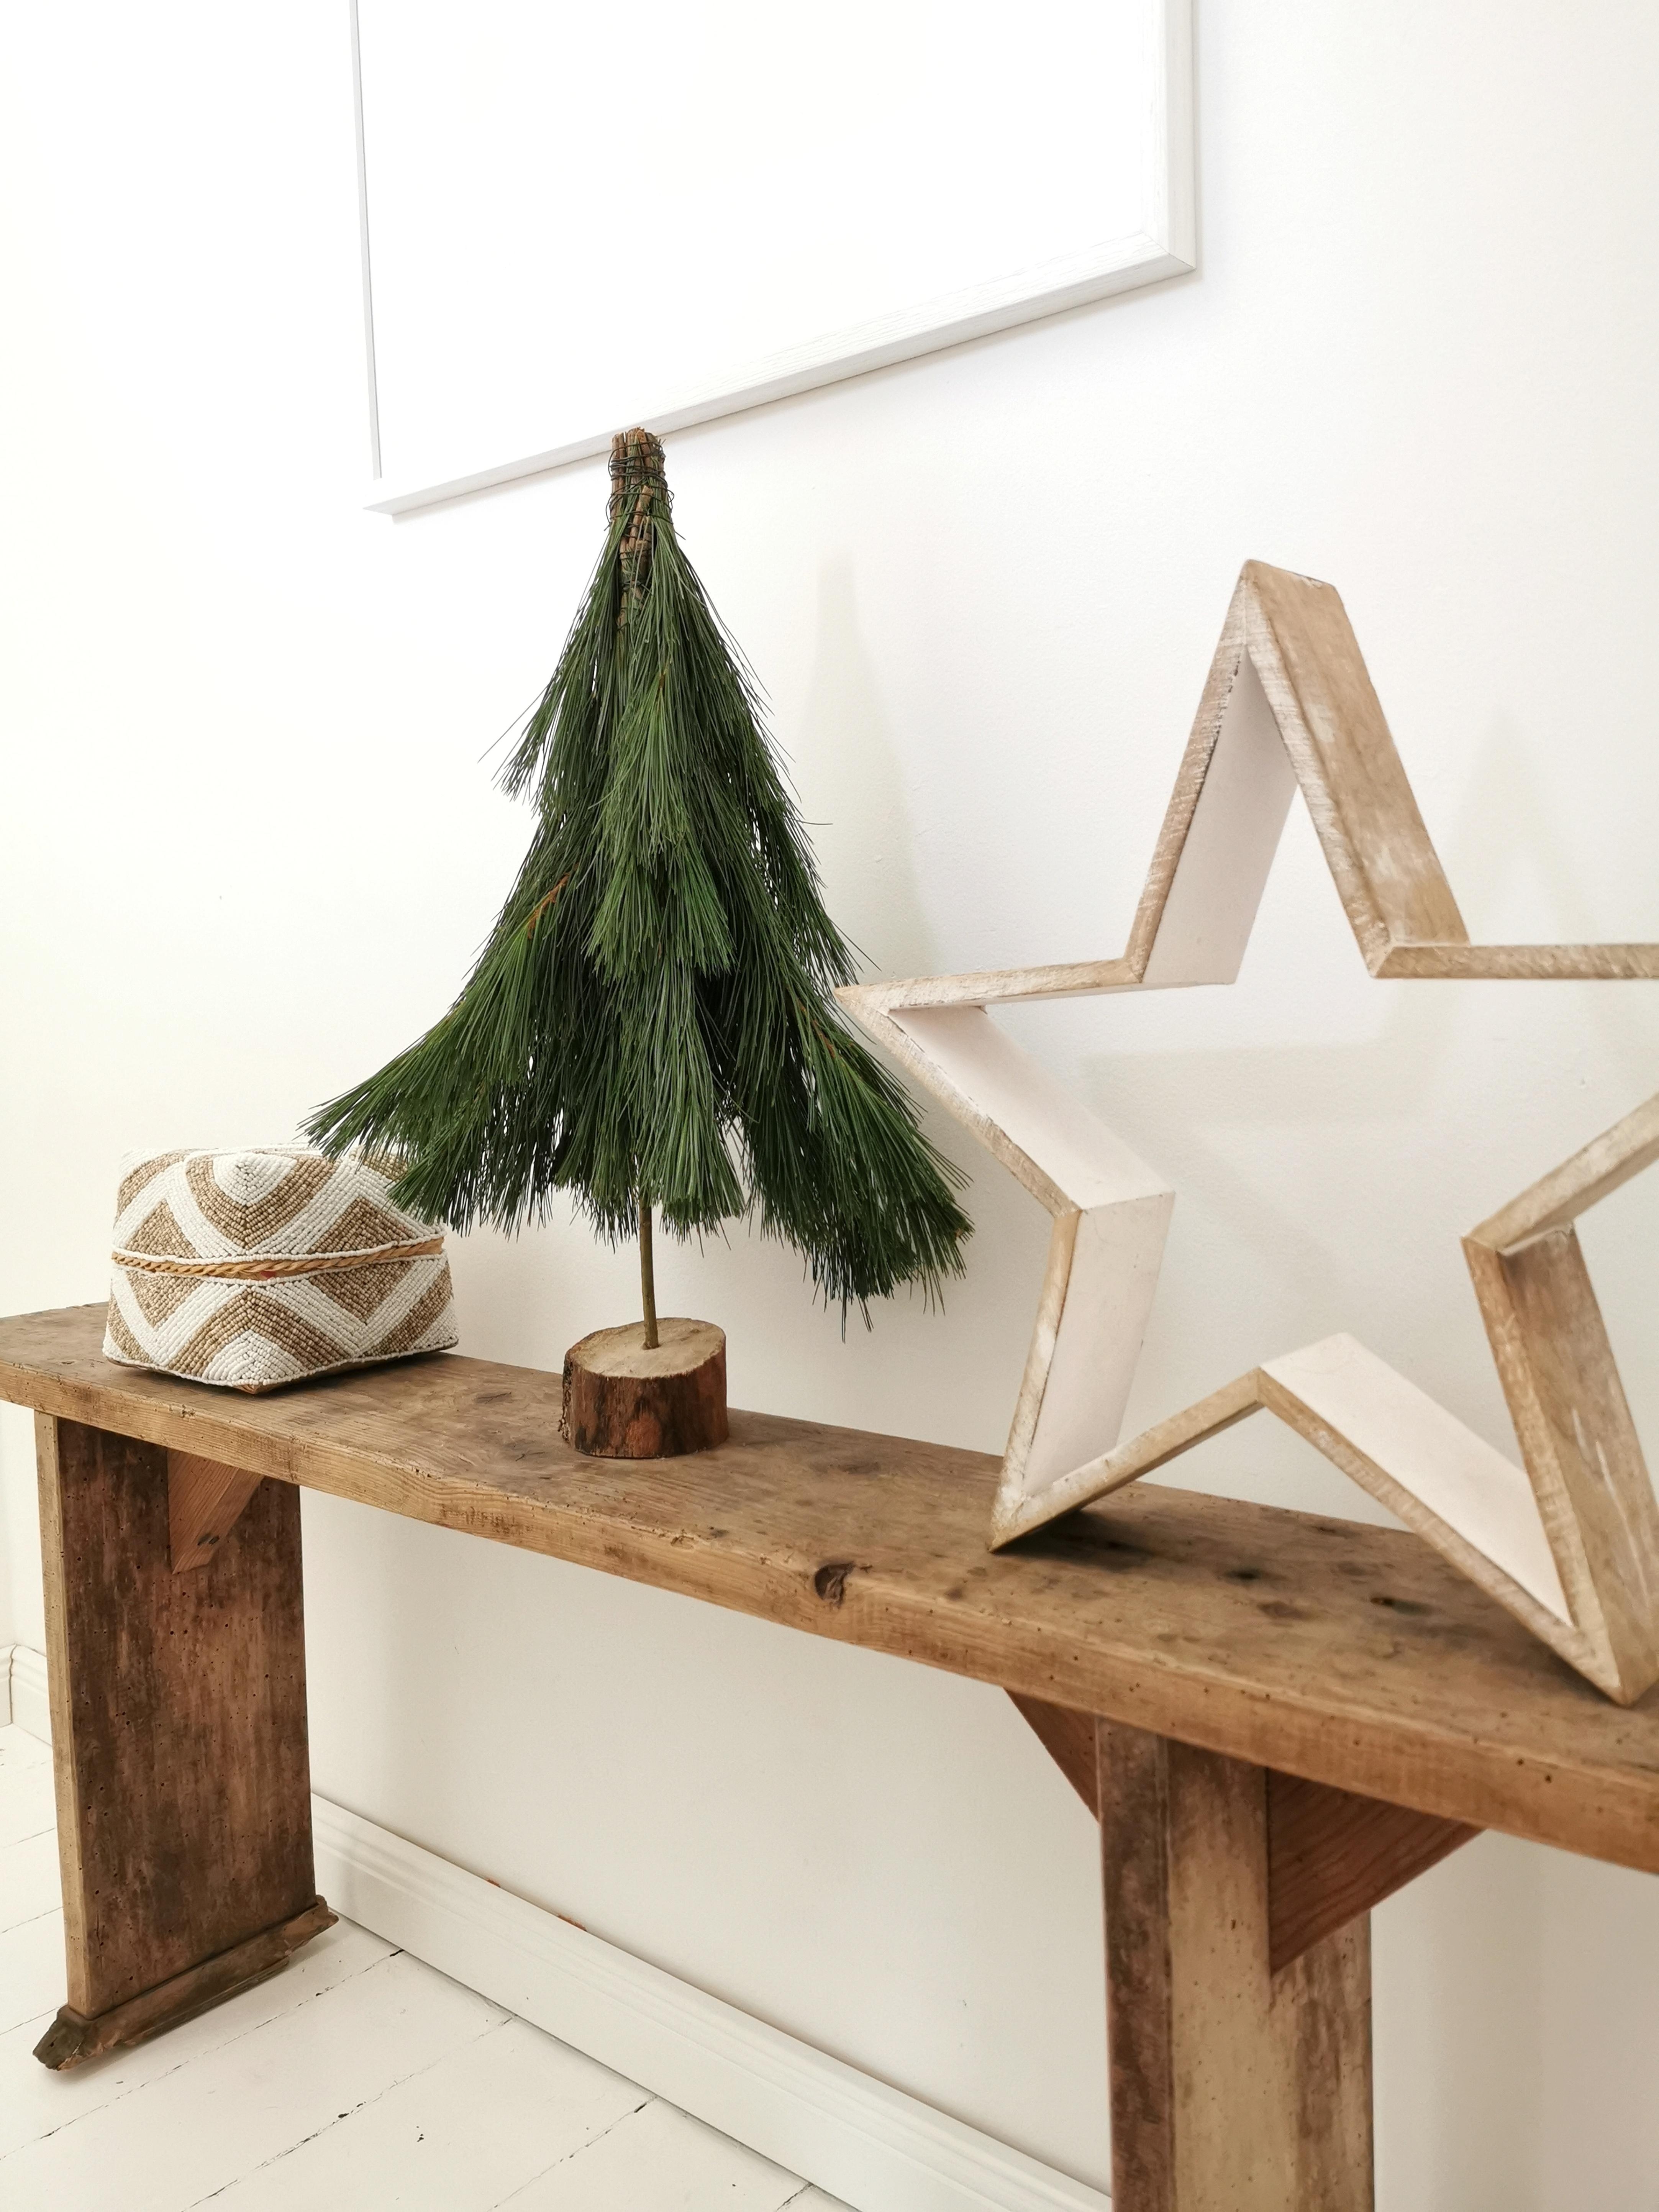 Selbstgemachte #Tannenbäume 🌲#diy #handmade #weihnachtsdeko #weihnachtszeit #xmax

